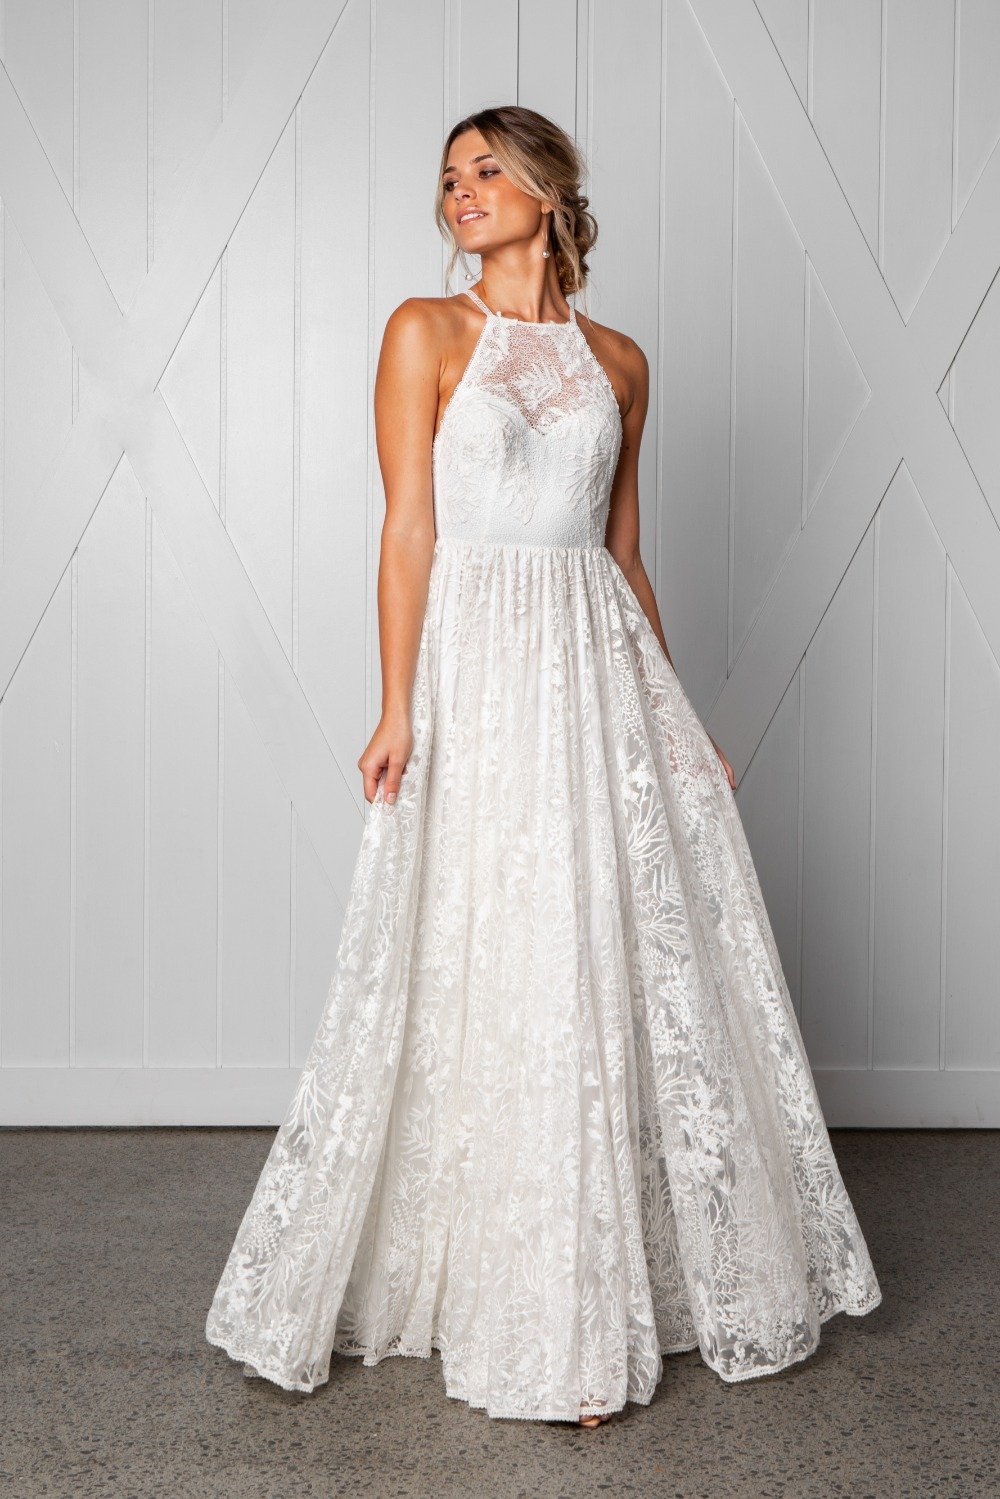 harri-wedding-dress-by-grace-loves-lace-2